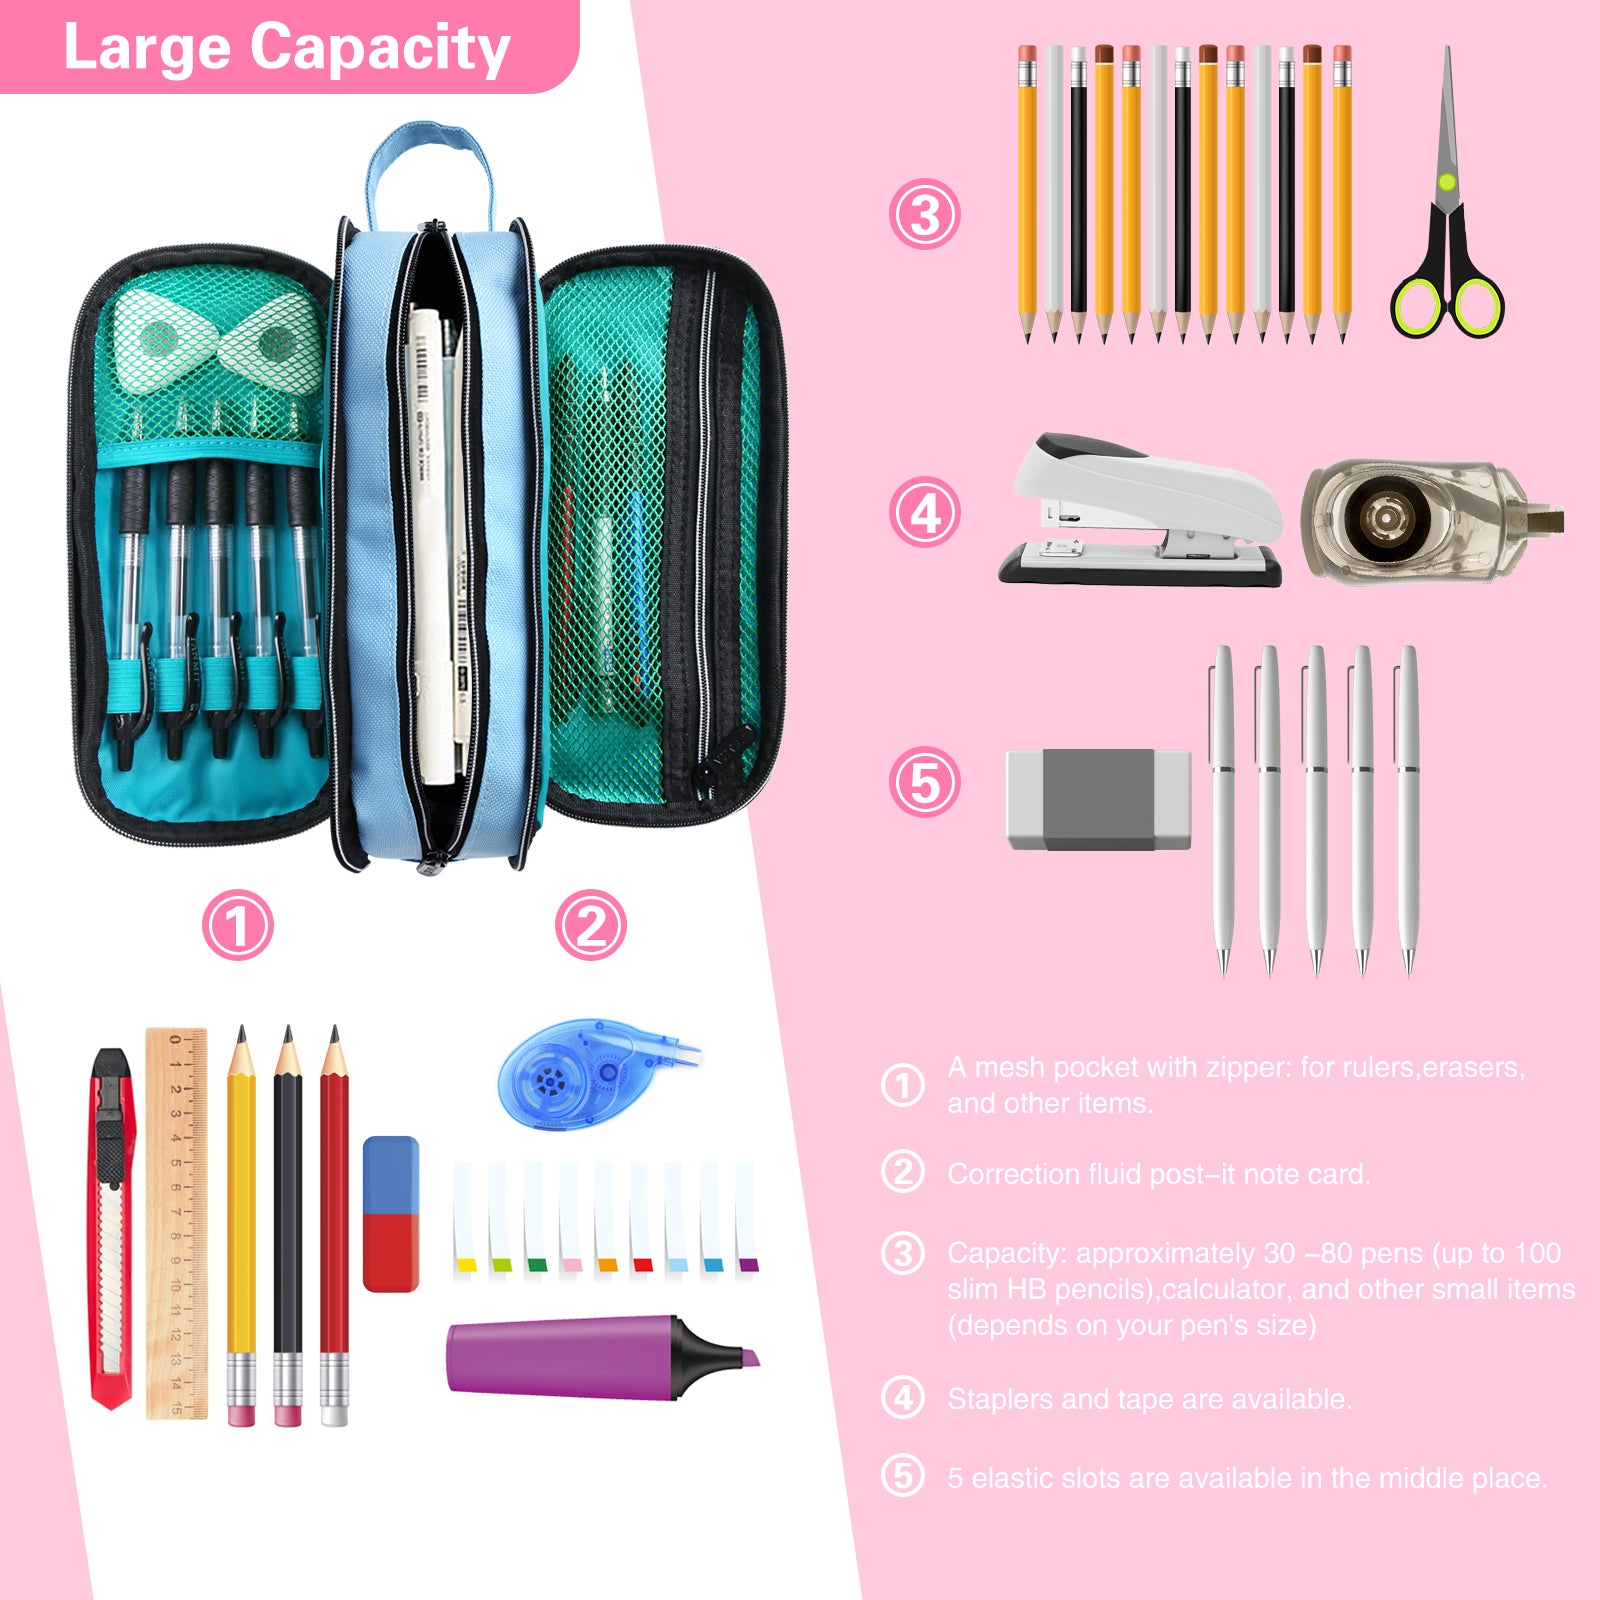 Pencil Case pinky / Pencil Case Pencil Case Pen 